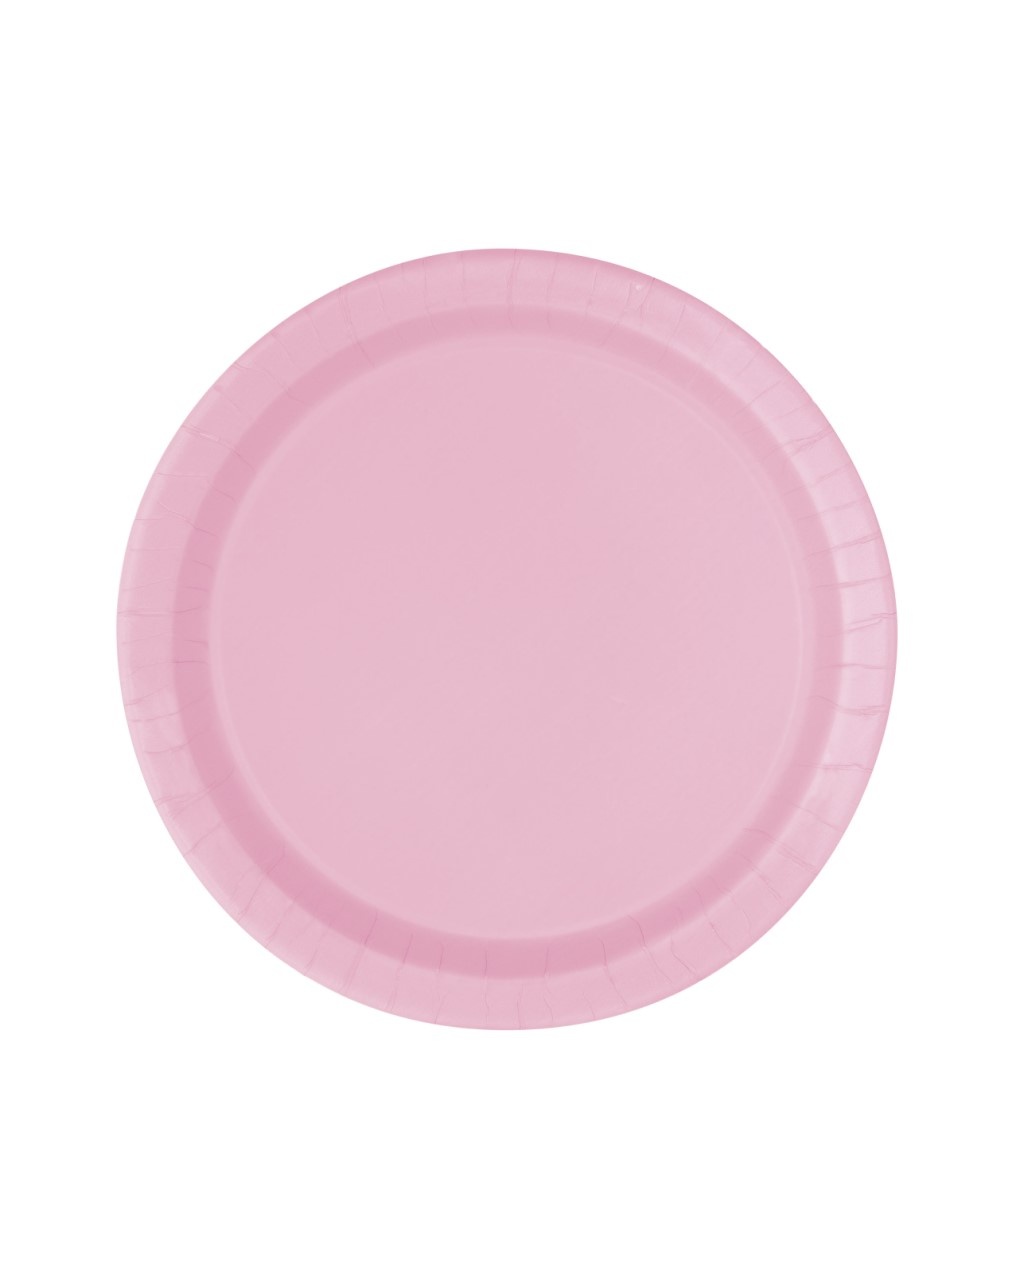 Piatto carta 18 cm - 20 pezzi - rosa pastello - Bigiemme